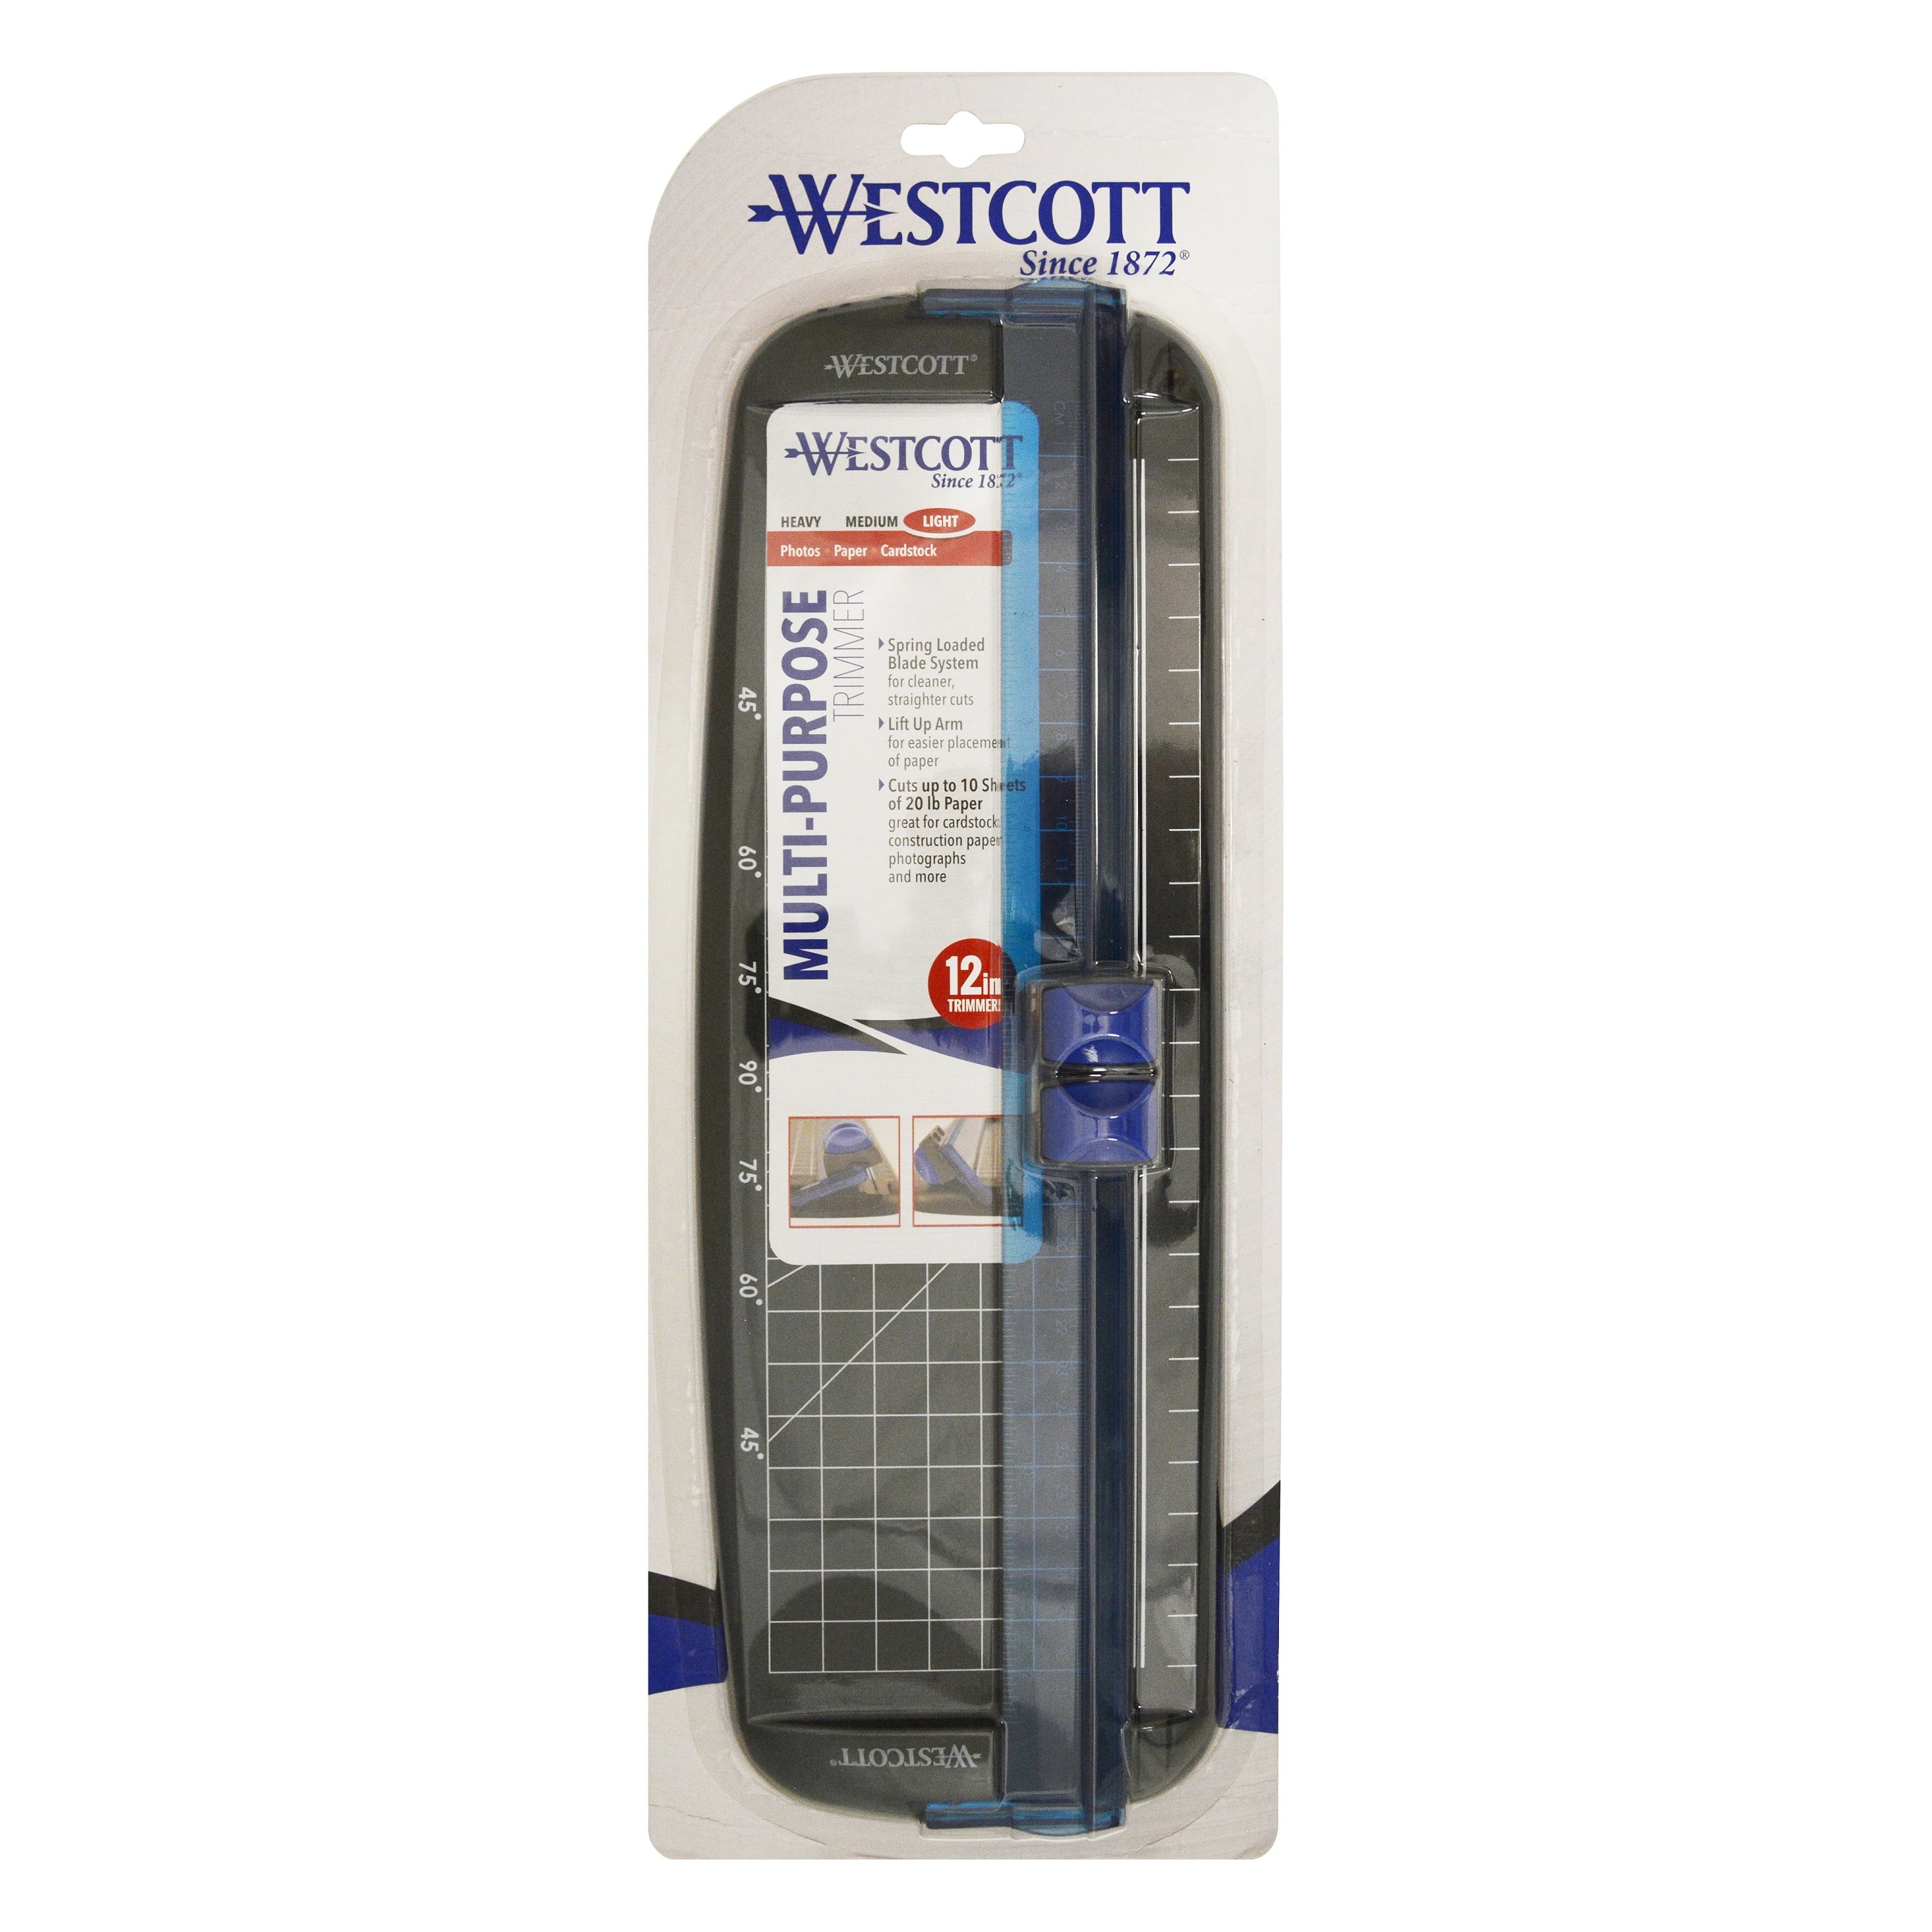 Westcott 15804 Multi-Purpose Personal Paper Trimmer, 12 in